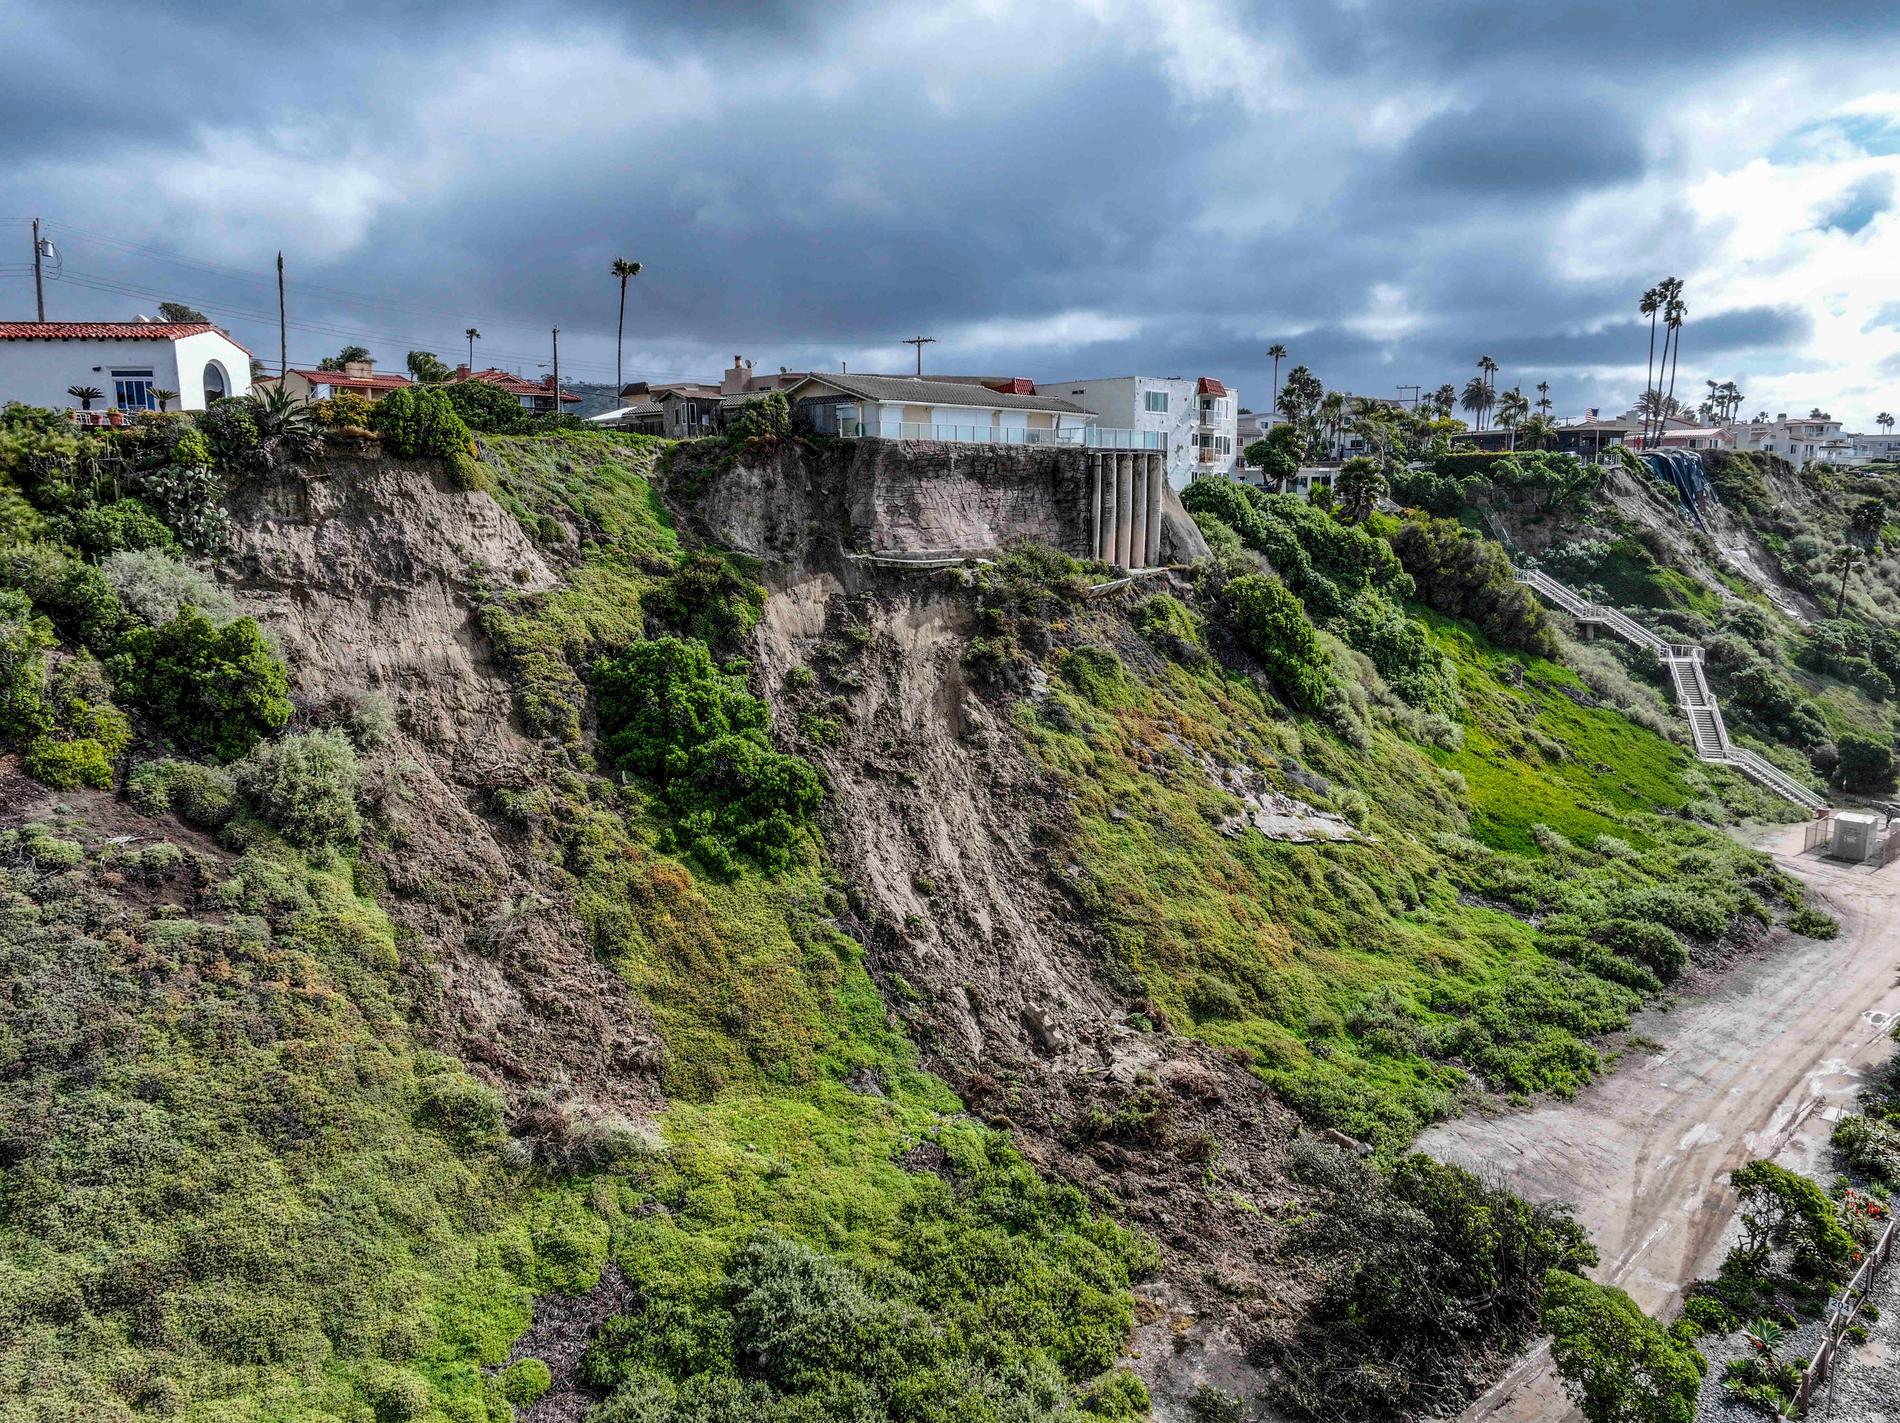 Upprepade jordskred har inträffat längs branterna mot havet vid North beach i San Clemente-området efter ihållande regn. Fler exklusiva hus är på väg att rasa ner på stranden.